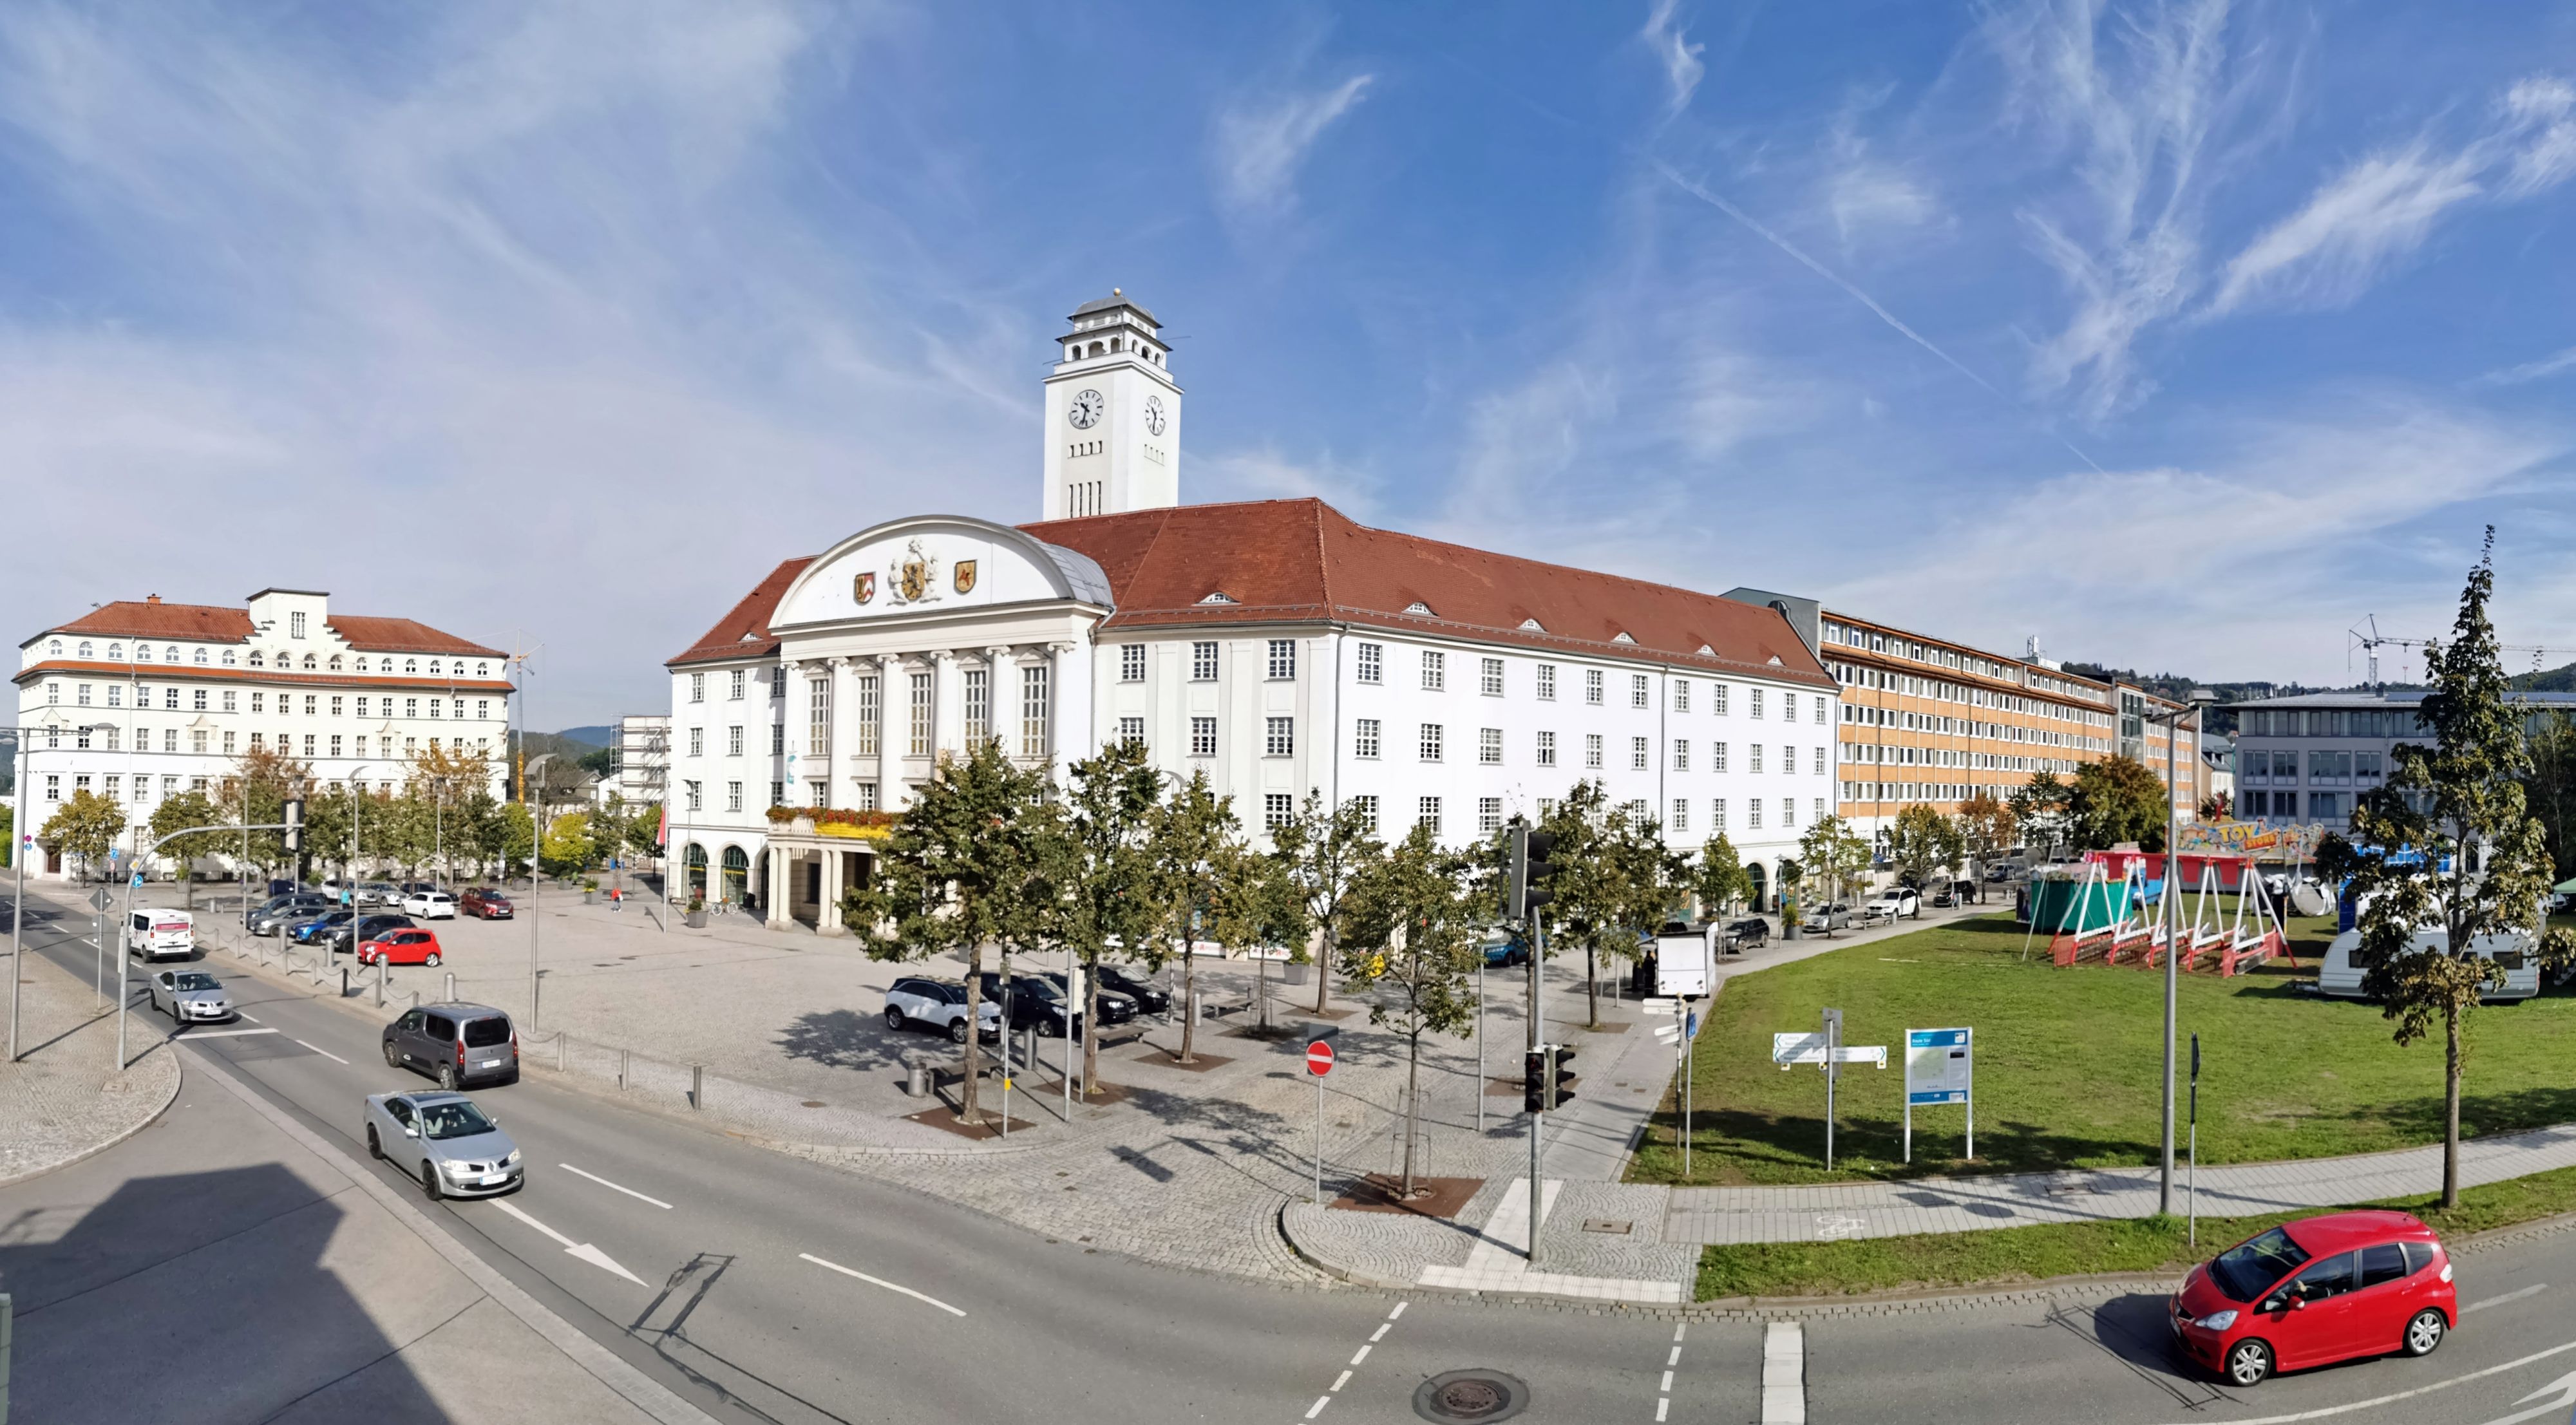 In der Mitte steht ein weißes Gebäude mit einem Turm. Es ist das Rathaus der Stadt Sonneberg. Rechts davon ist eine Wiese. Auf der linken Seite steht das AOK-Gebäude. Die Sonne scheint.